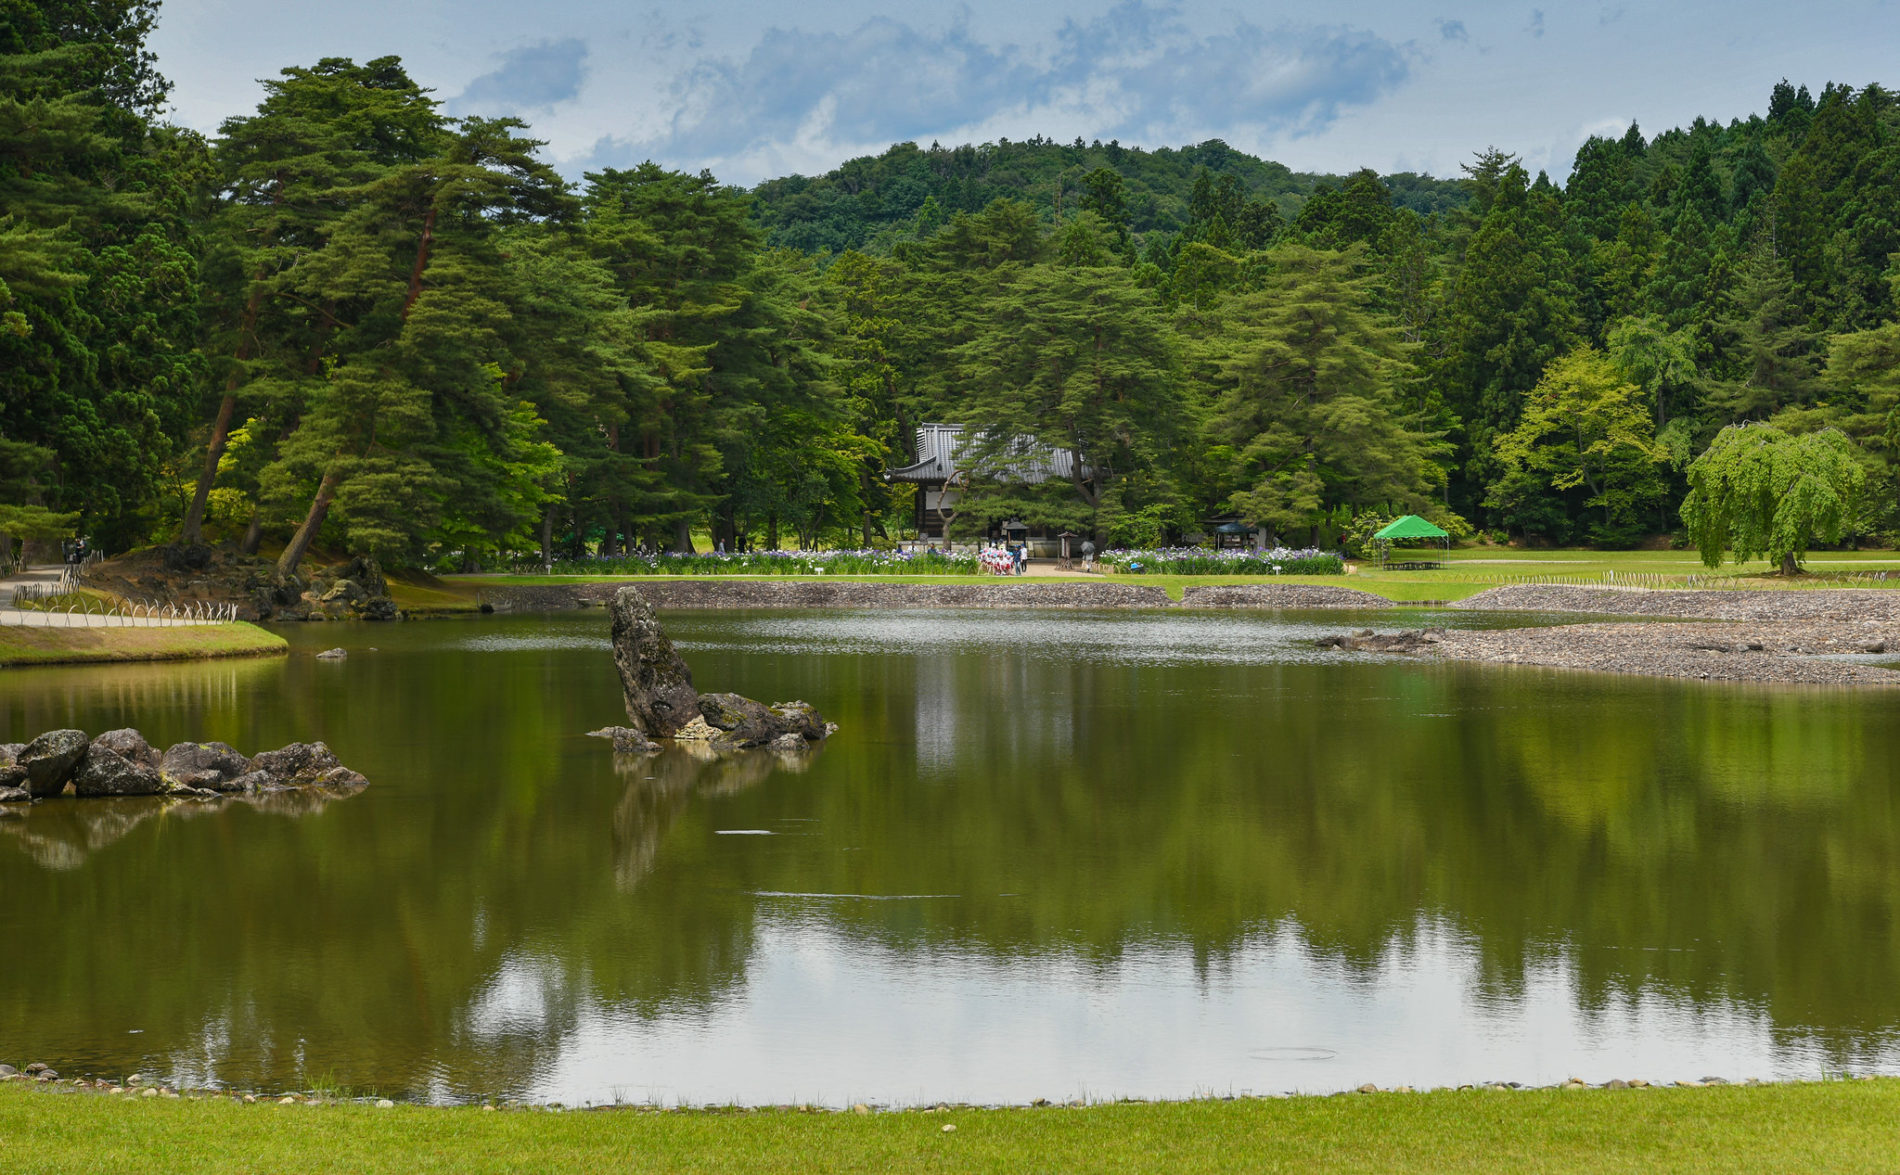 Einer der ehemals vier Reines-Land-Gärten in Hiraizumi, seit 2011 eine UNESCO Kulturerbestätte. (Foto: https://www.flickr.com/photos/xiquinho/43878394154/)